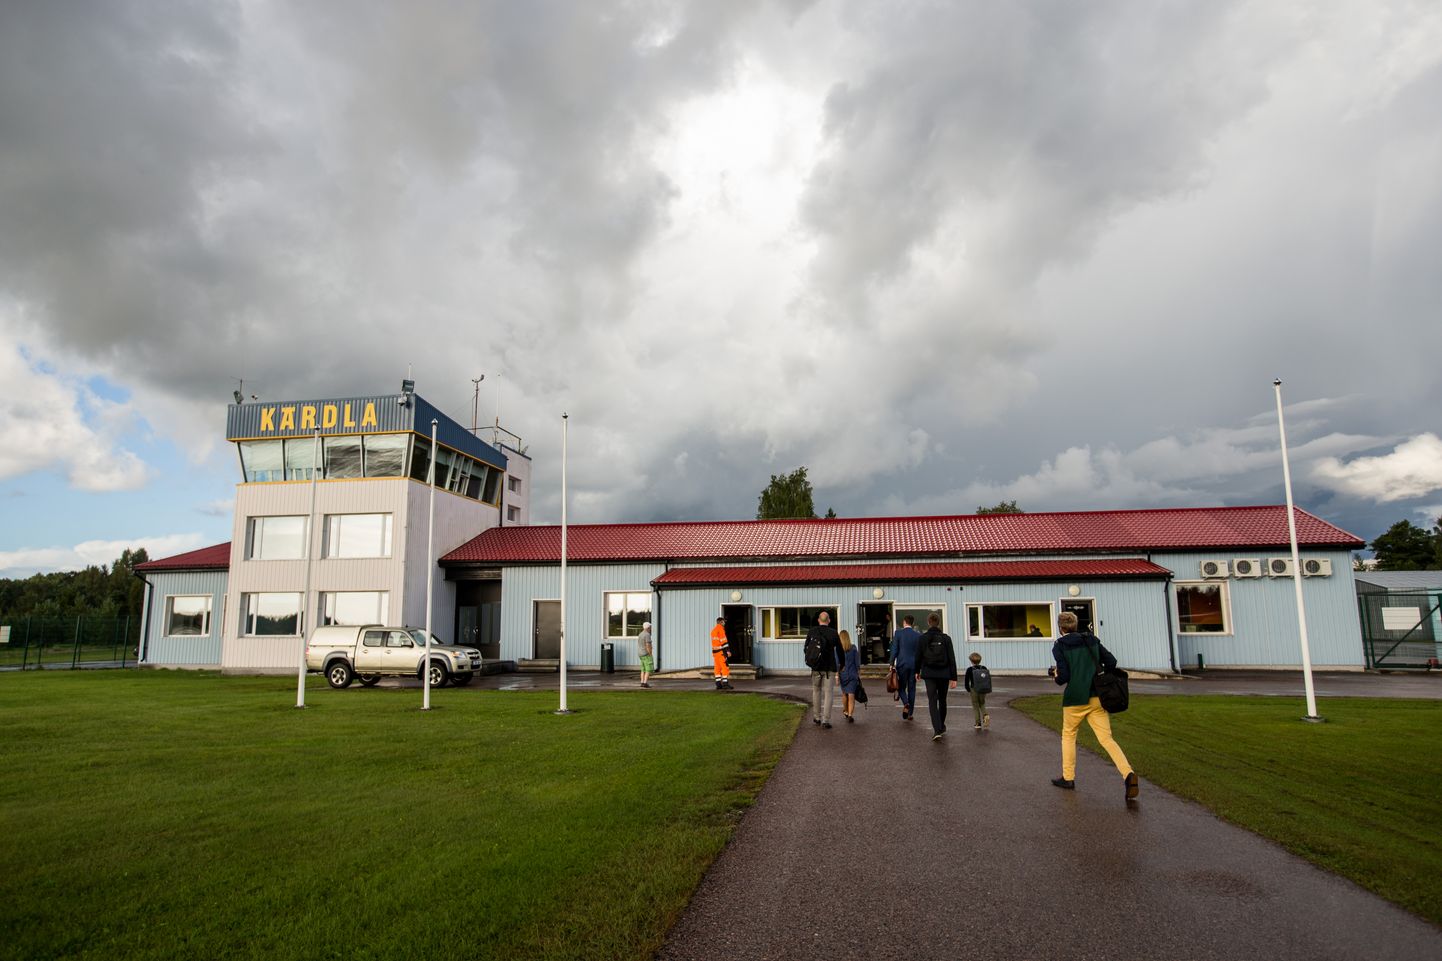 02.08.2016. Hiiumaa. Lennuühendus Hiiumaaga. Transaviabaltica. FOTO: EERO VABAMÄGI/POSTIMEES